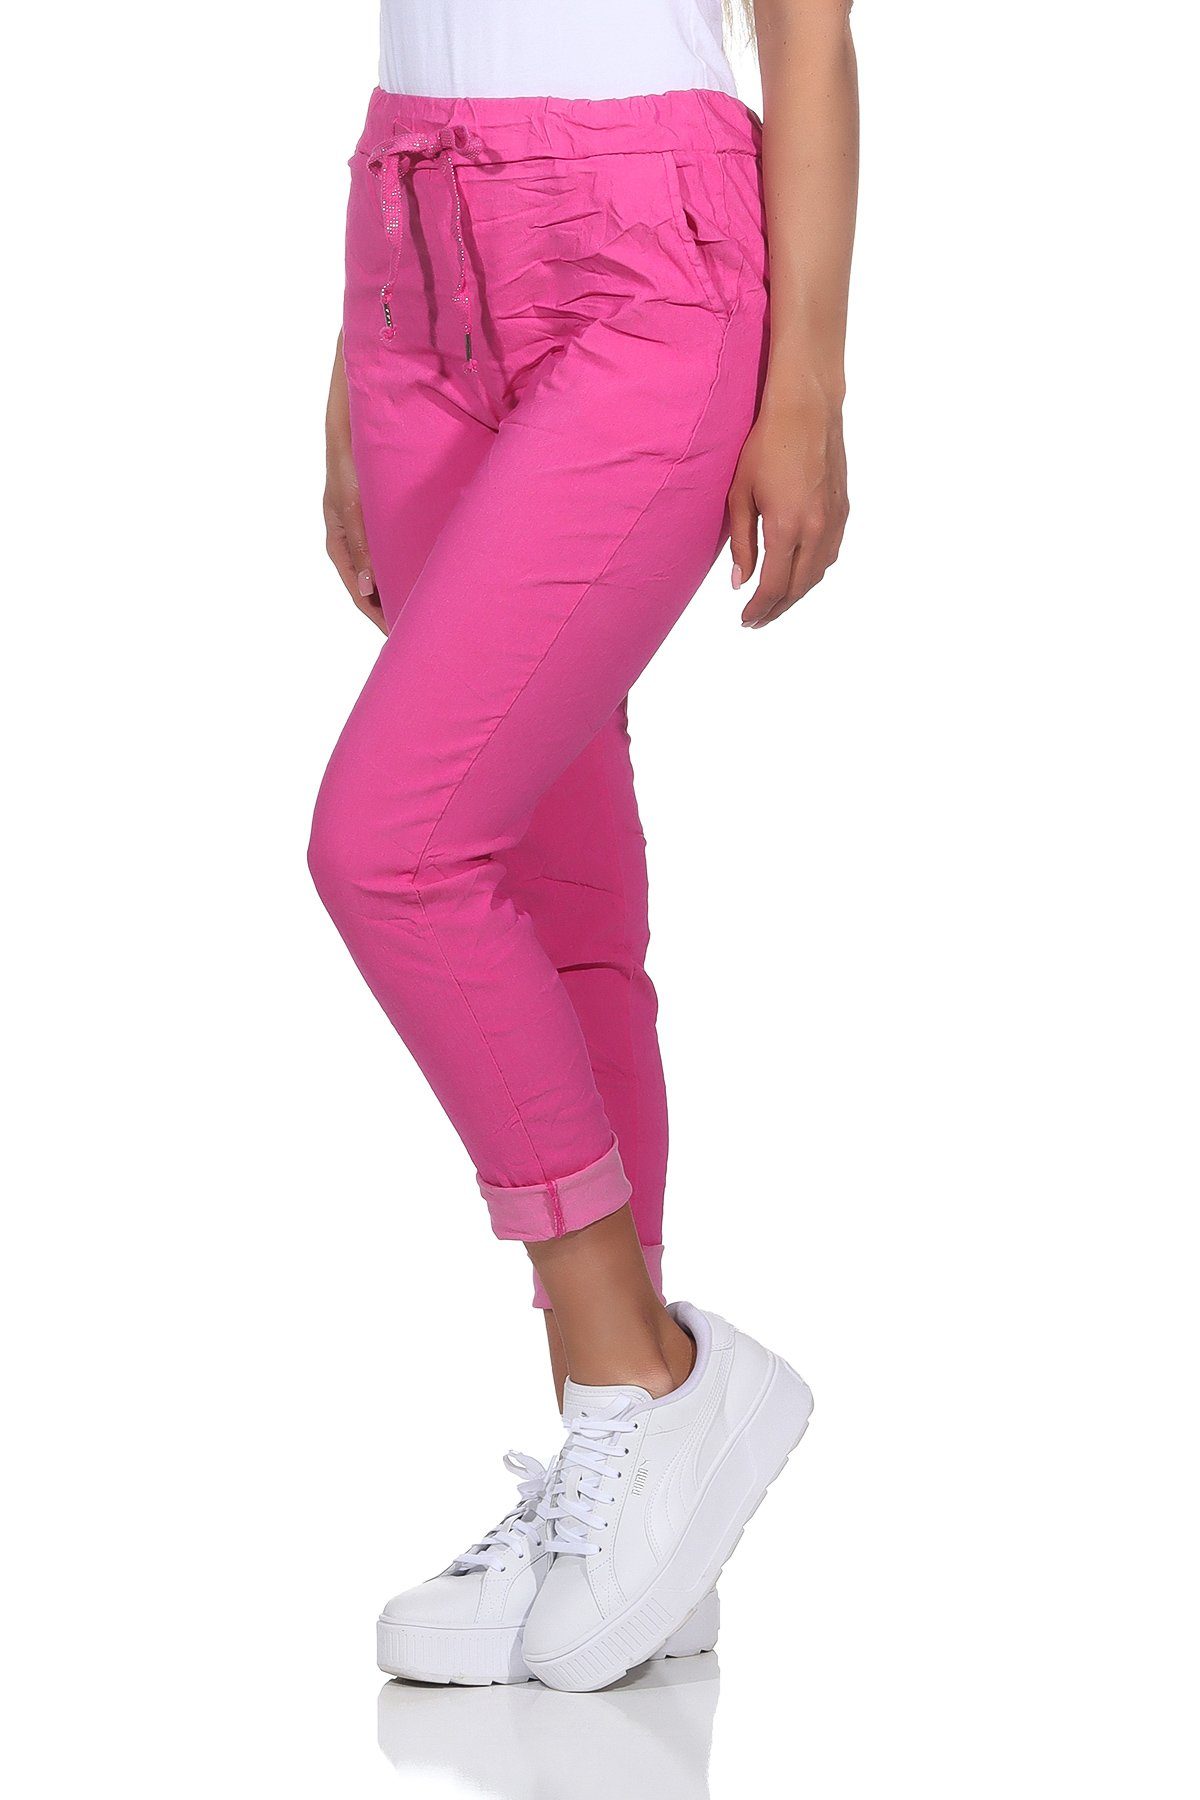 auch modischen großen Schlupfhose Aurela Körpergröße Stretch-Jeans Damen Sommerhose Sommerfarben, max. Größen in leichte Pink erhältlich, Schlupfhose Damenmode Chinohose 1,69m in